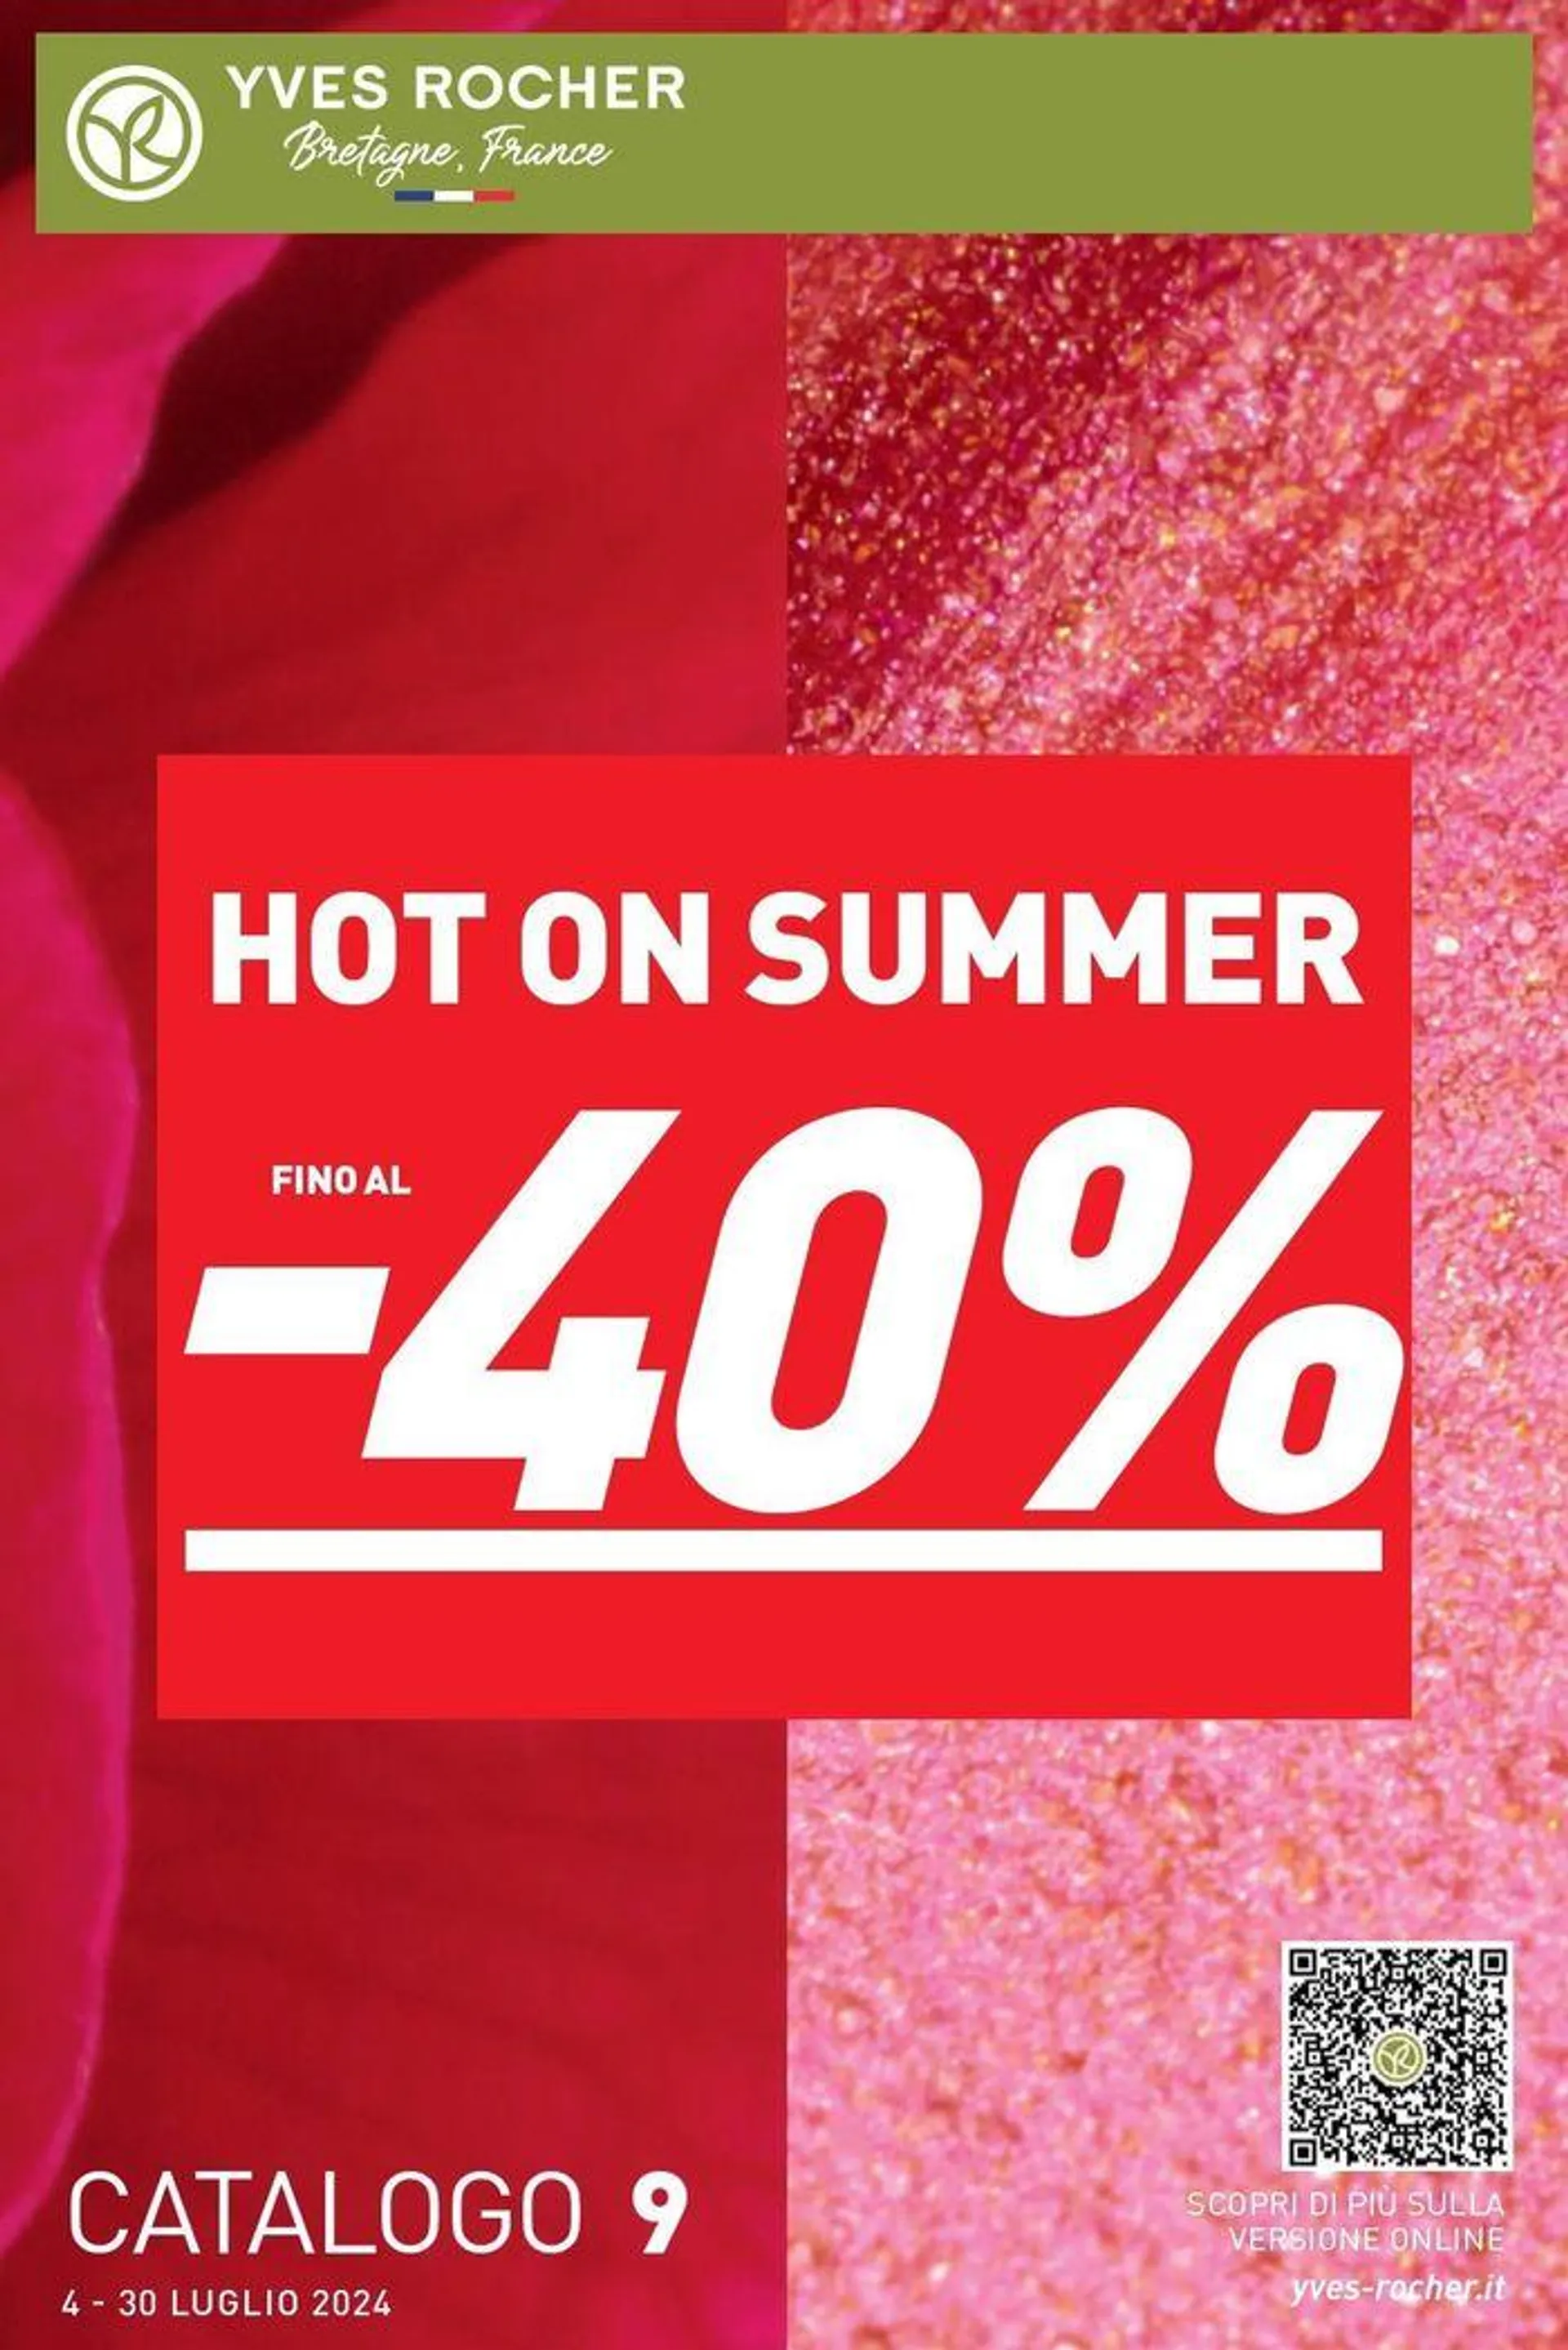 Hot on summer - 1